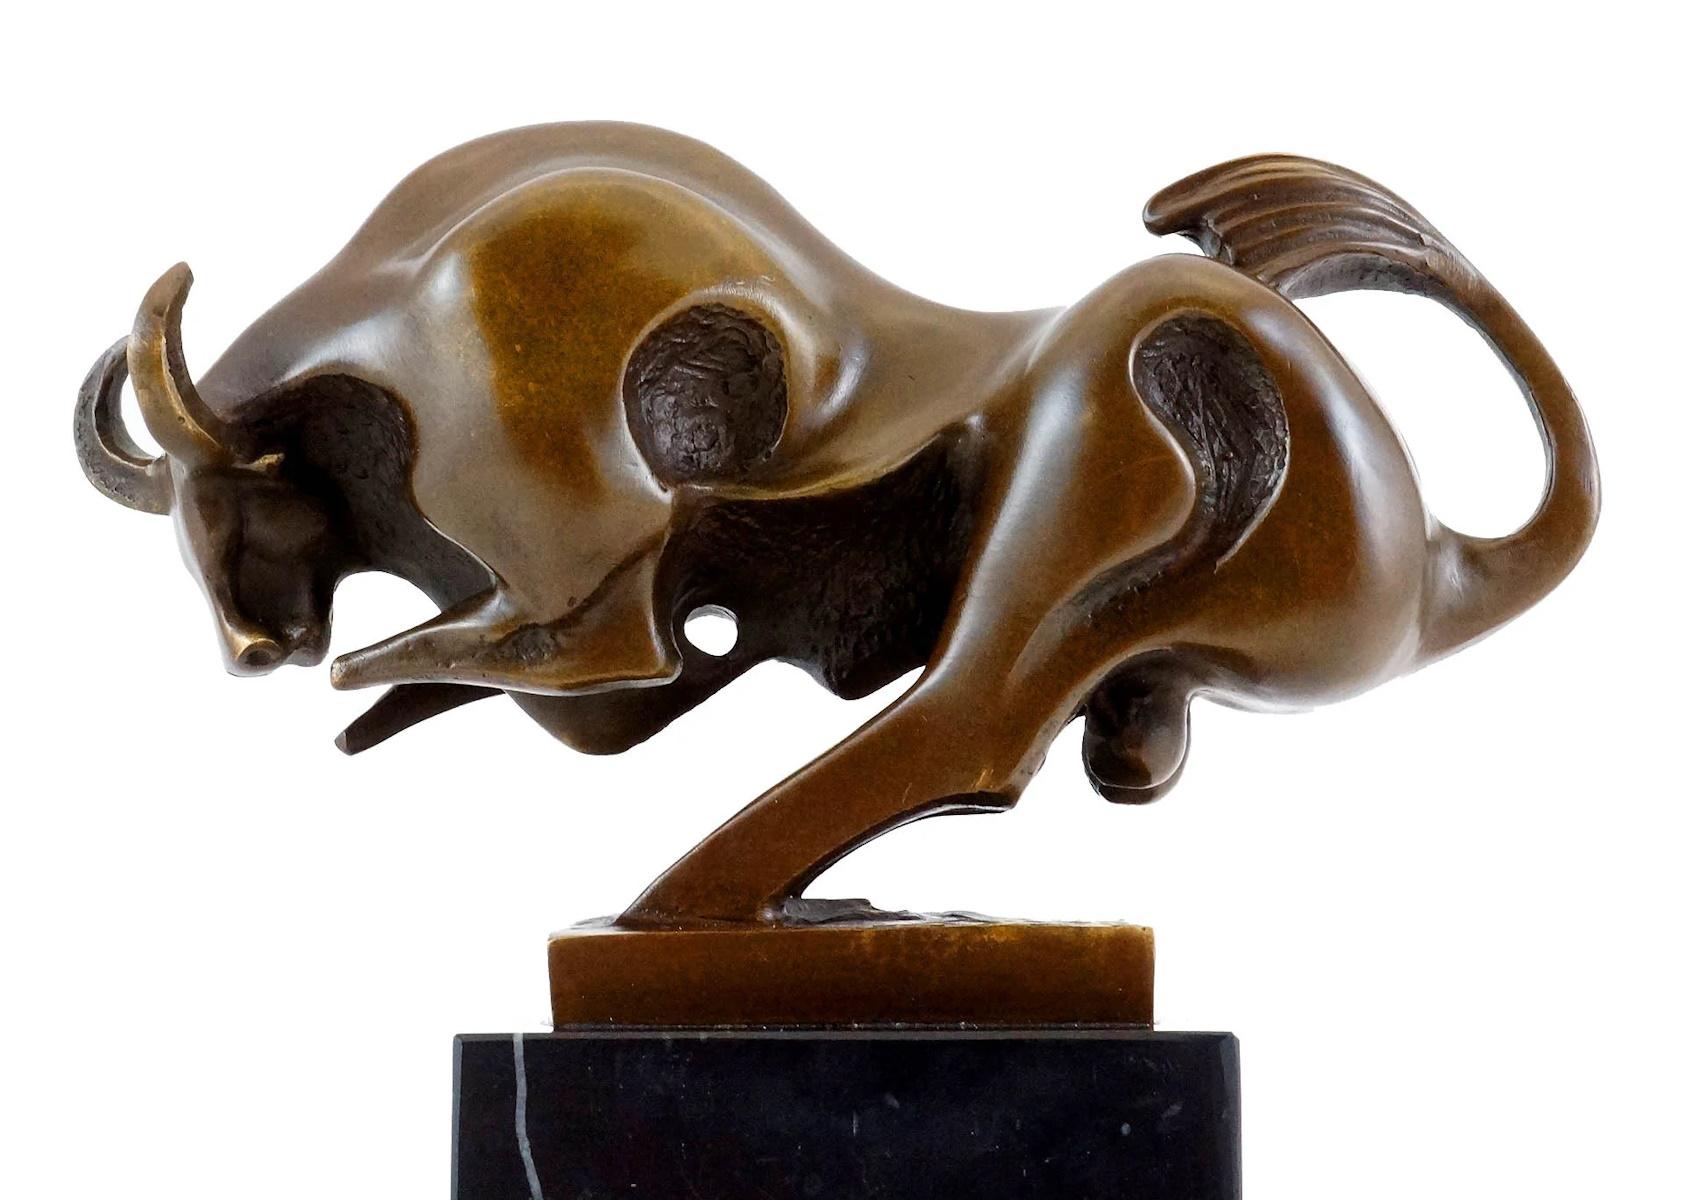 Sculpture en bronze représentant un taureau en mouvement, 20e siècle.

Sculpture en bronze représentant un taureau courant, patine brune, 20e siècle.  

h : 18cm, l : 20.5cm, p : 8cm